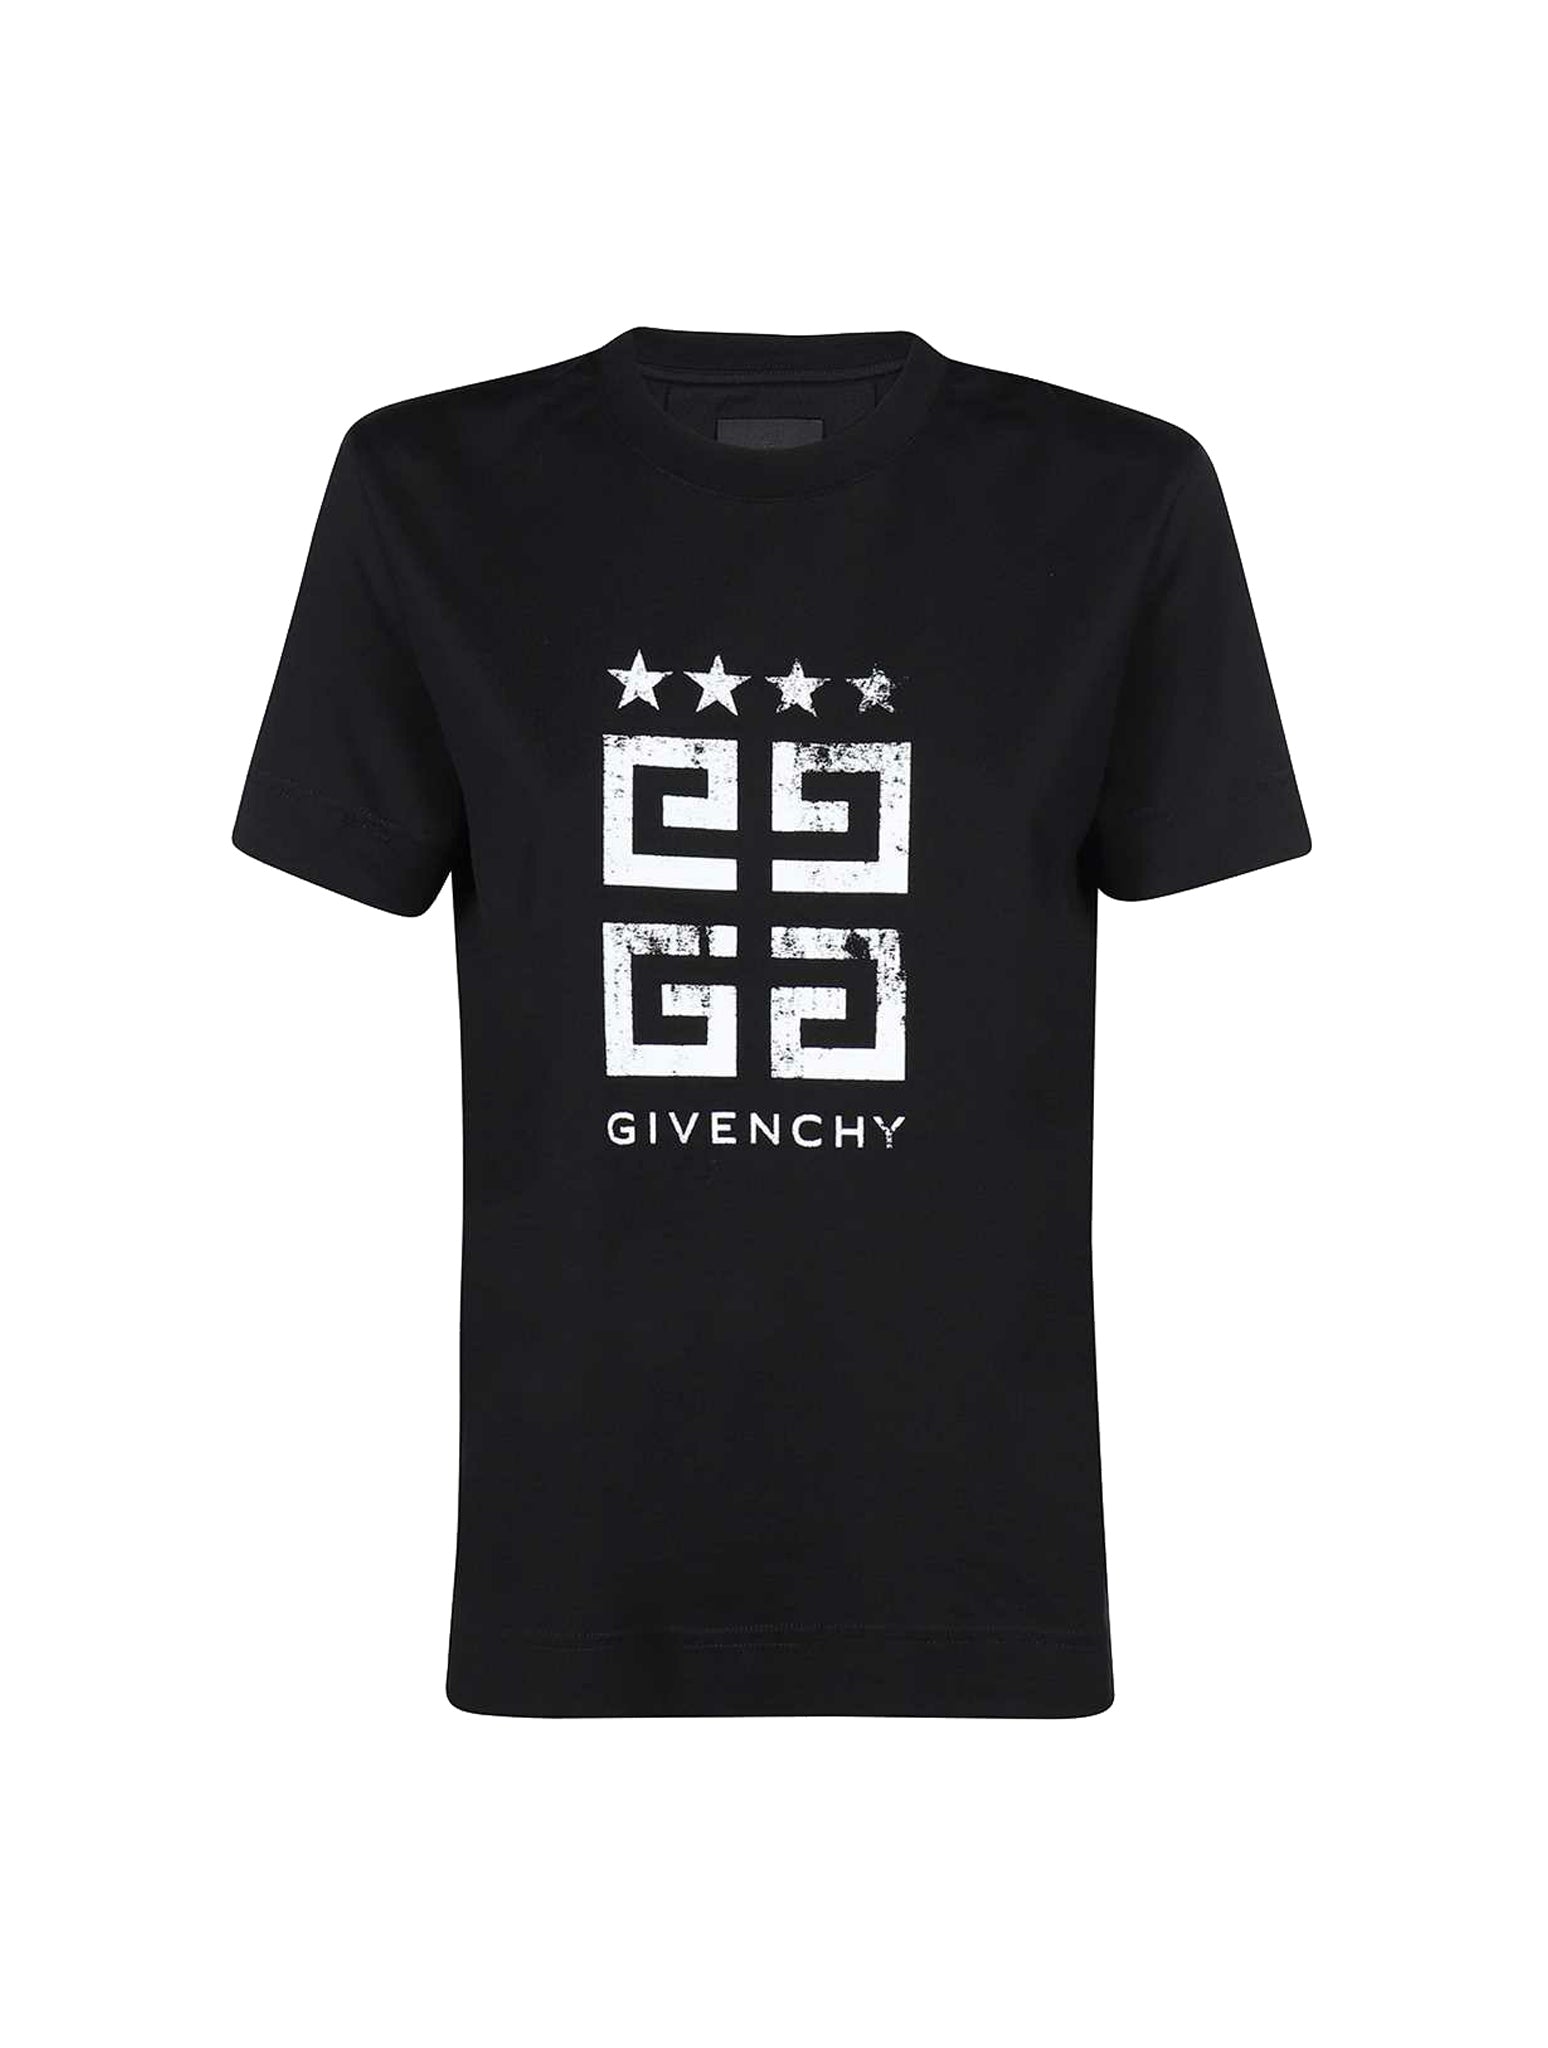 T-shirt in jersey di cotone con stampa 4G Stars sul davanti